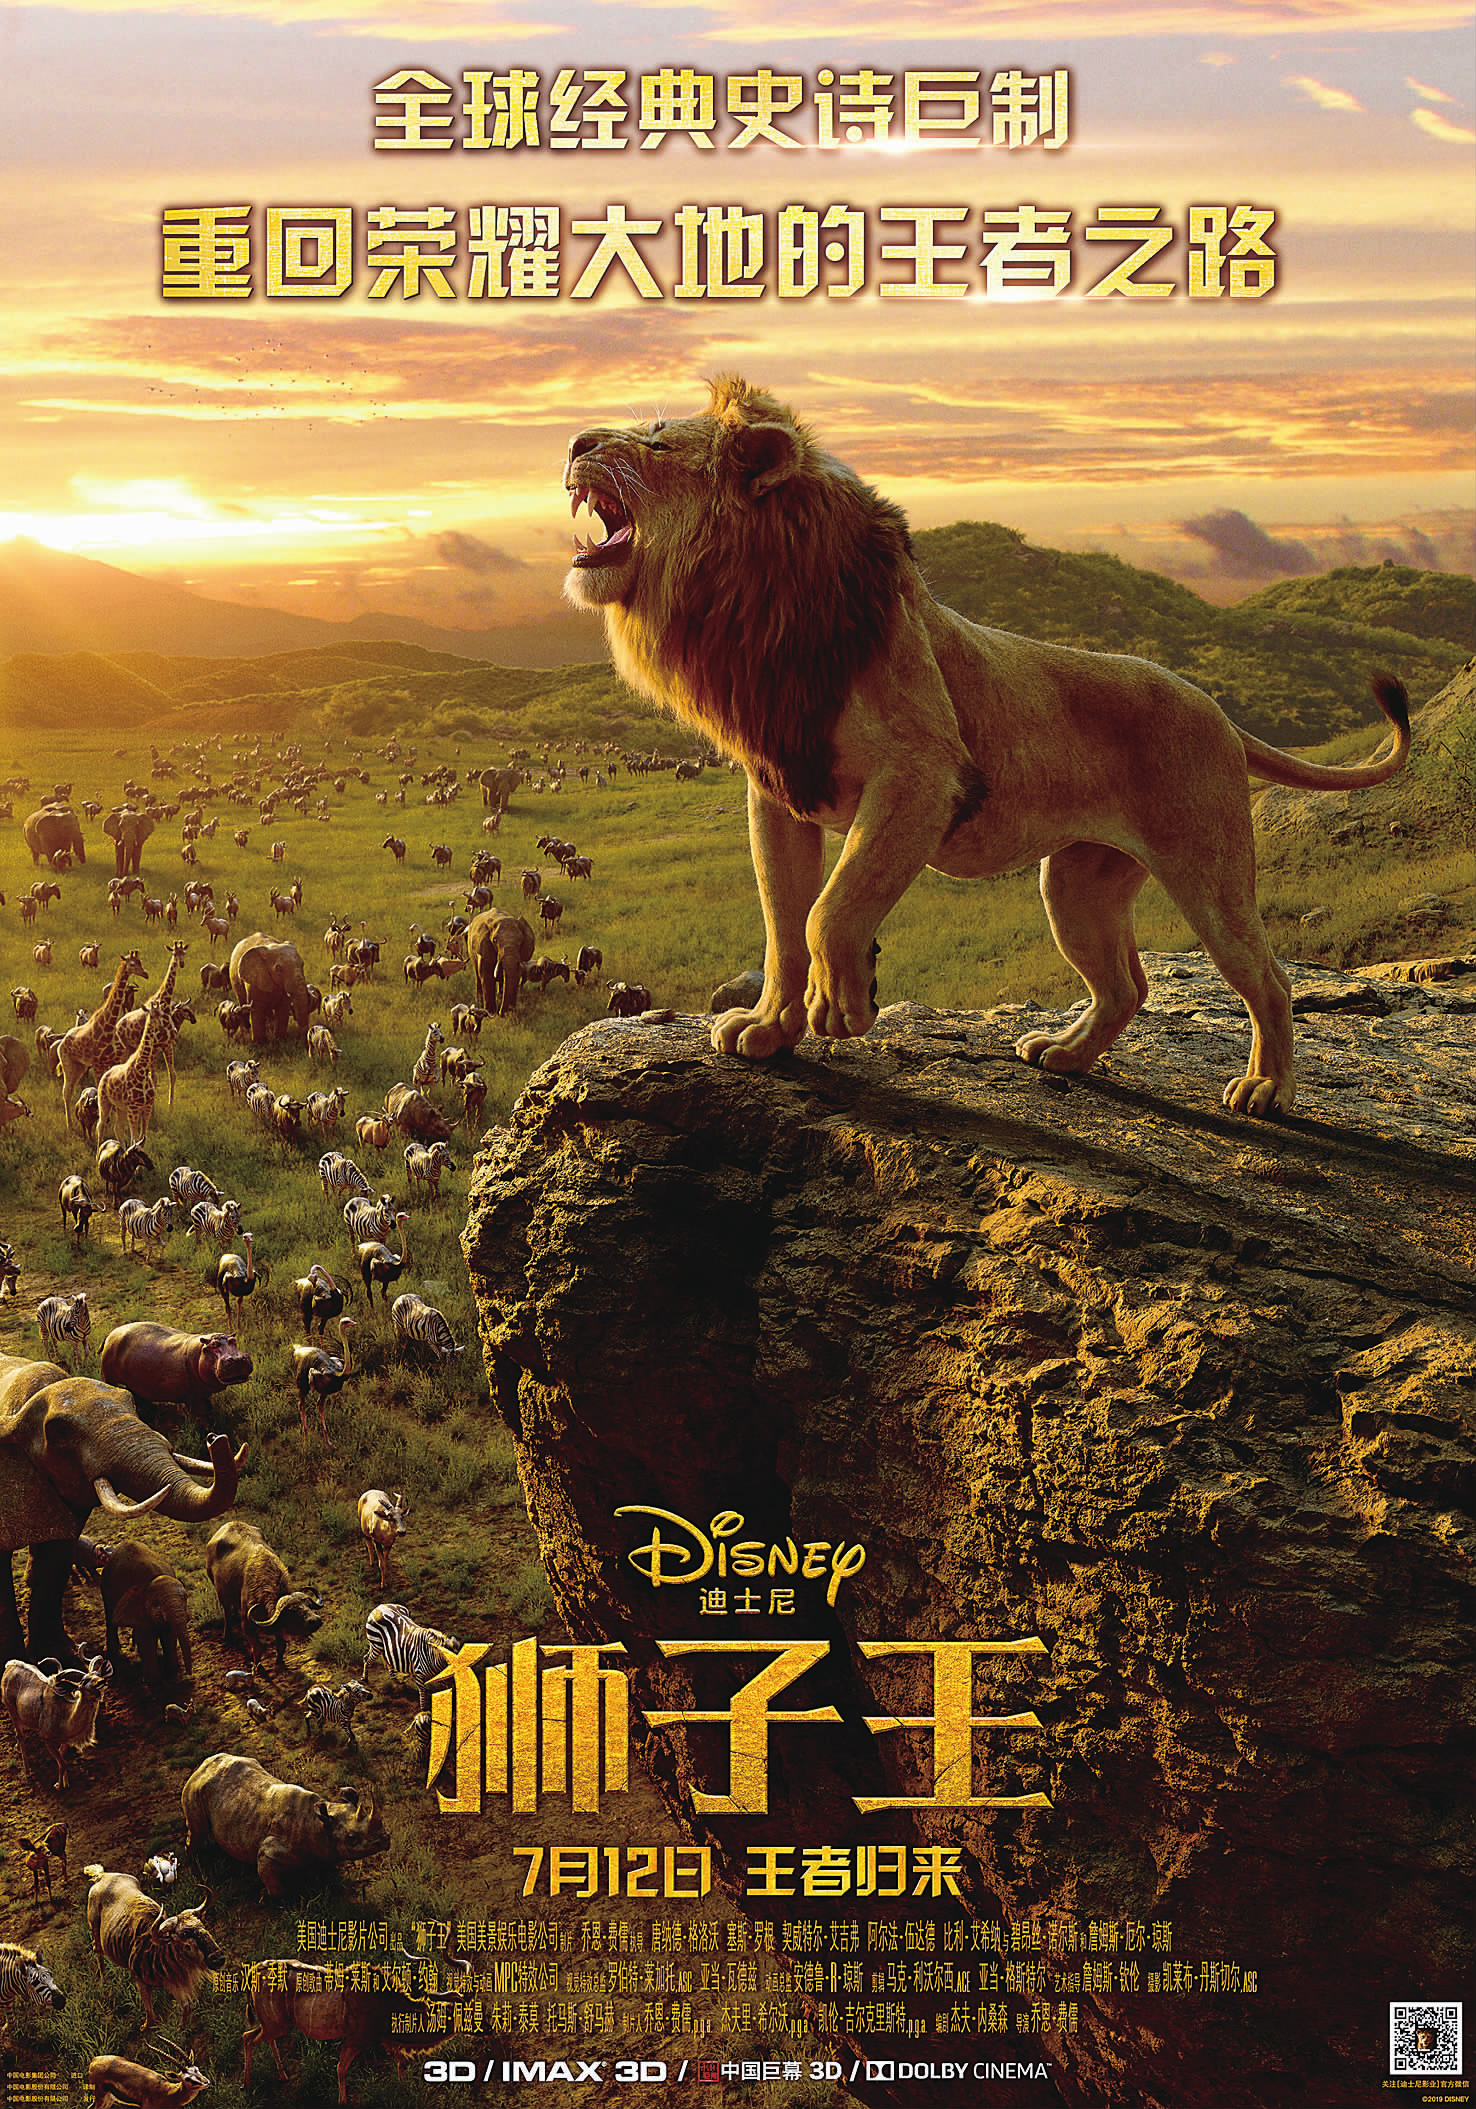 《狮子王》是由华特·迪士尼影片公司出品的电影